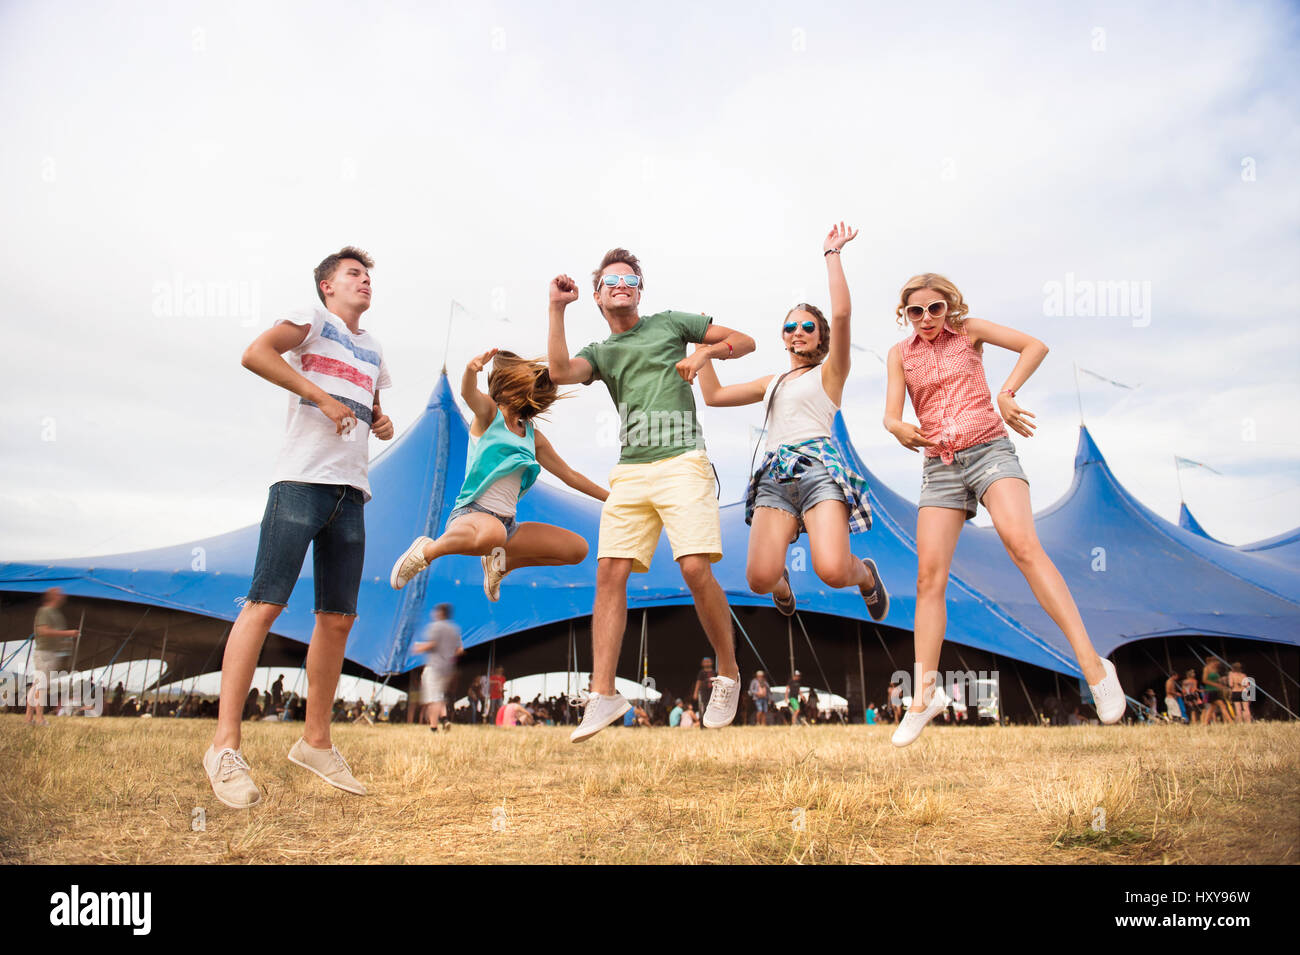 Gruppe von Teenager-Jungen und Mädchen im Sommer-Musikfestival, tanzen und springen vor grossen Zelt, sonnigen Tag Stockfoto